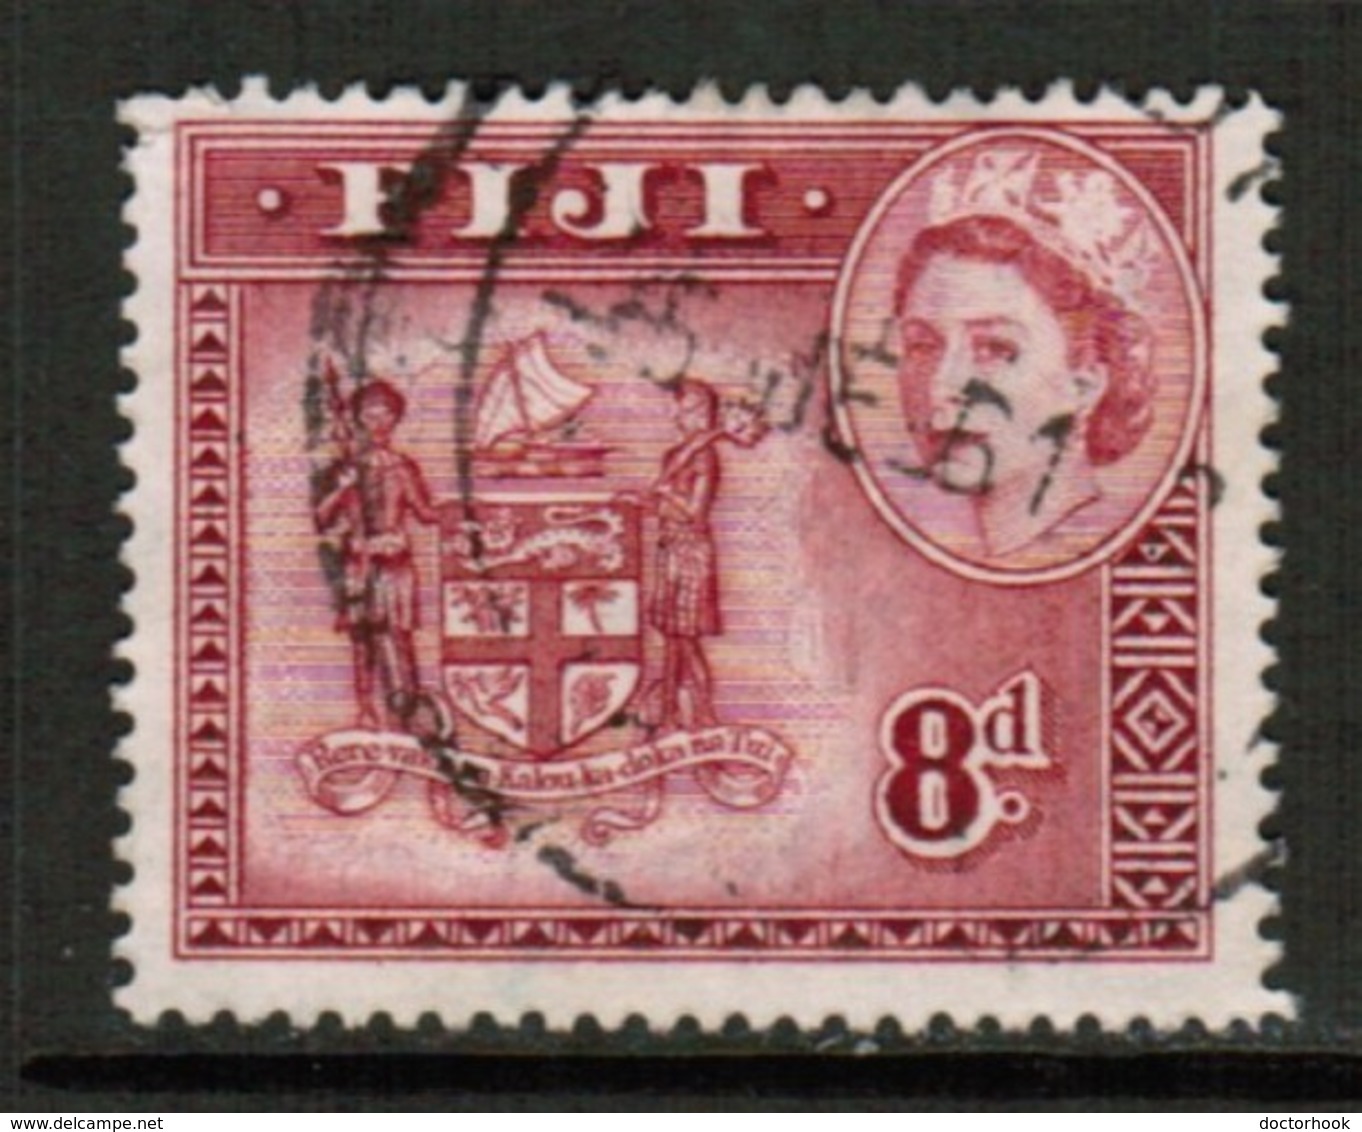 FIJI  Scott # 155 VF USED  (Stamp Scan # 522) - Fiji (...-1970)